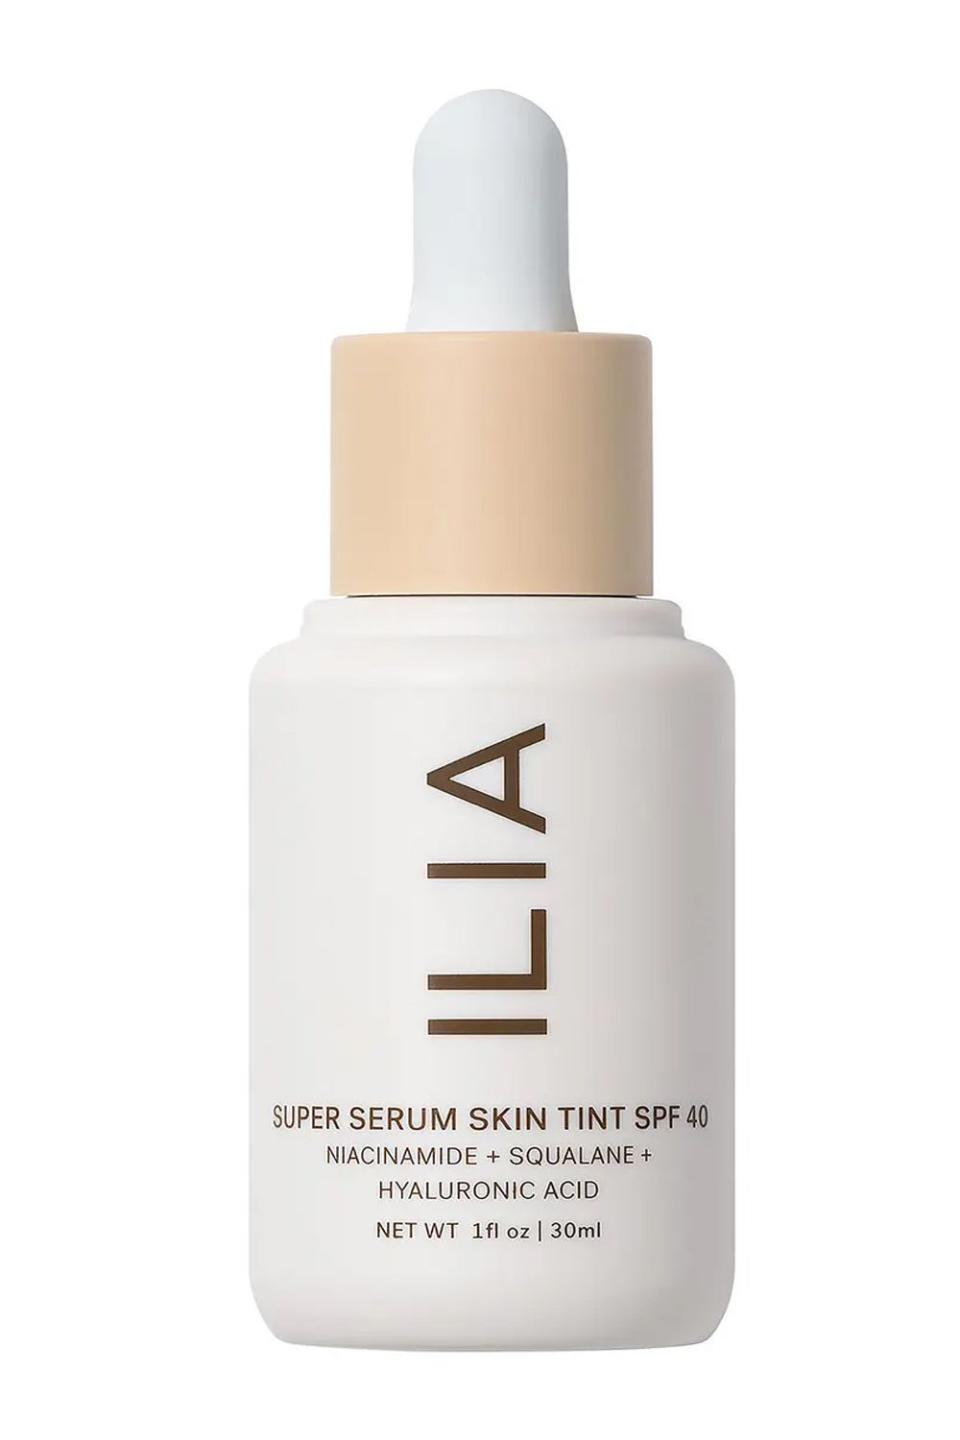 7) Ilia Super Serum Skin Tint SPF 40